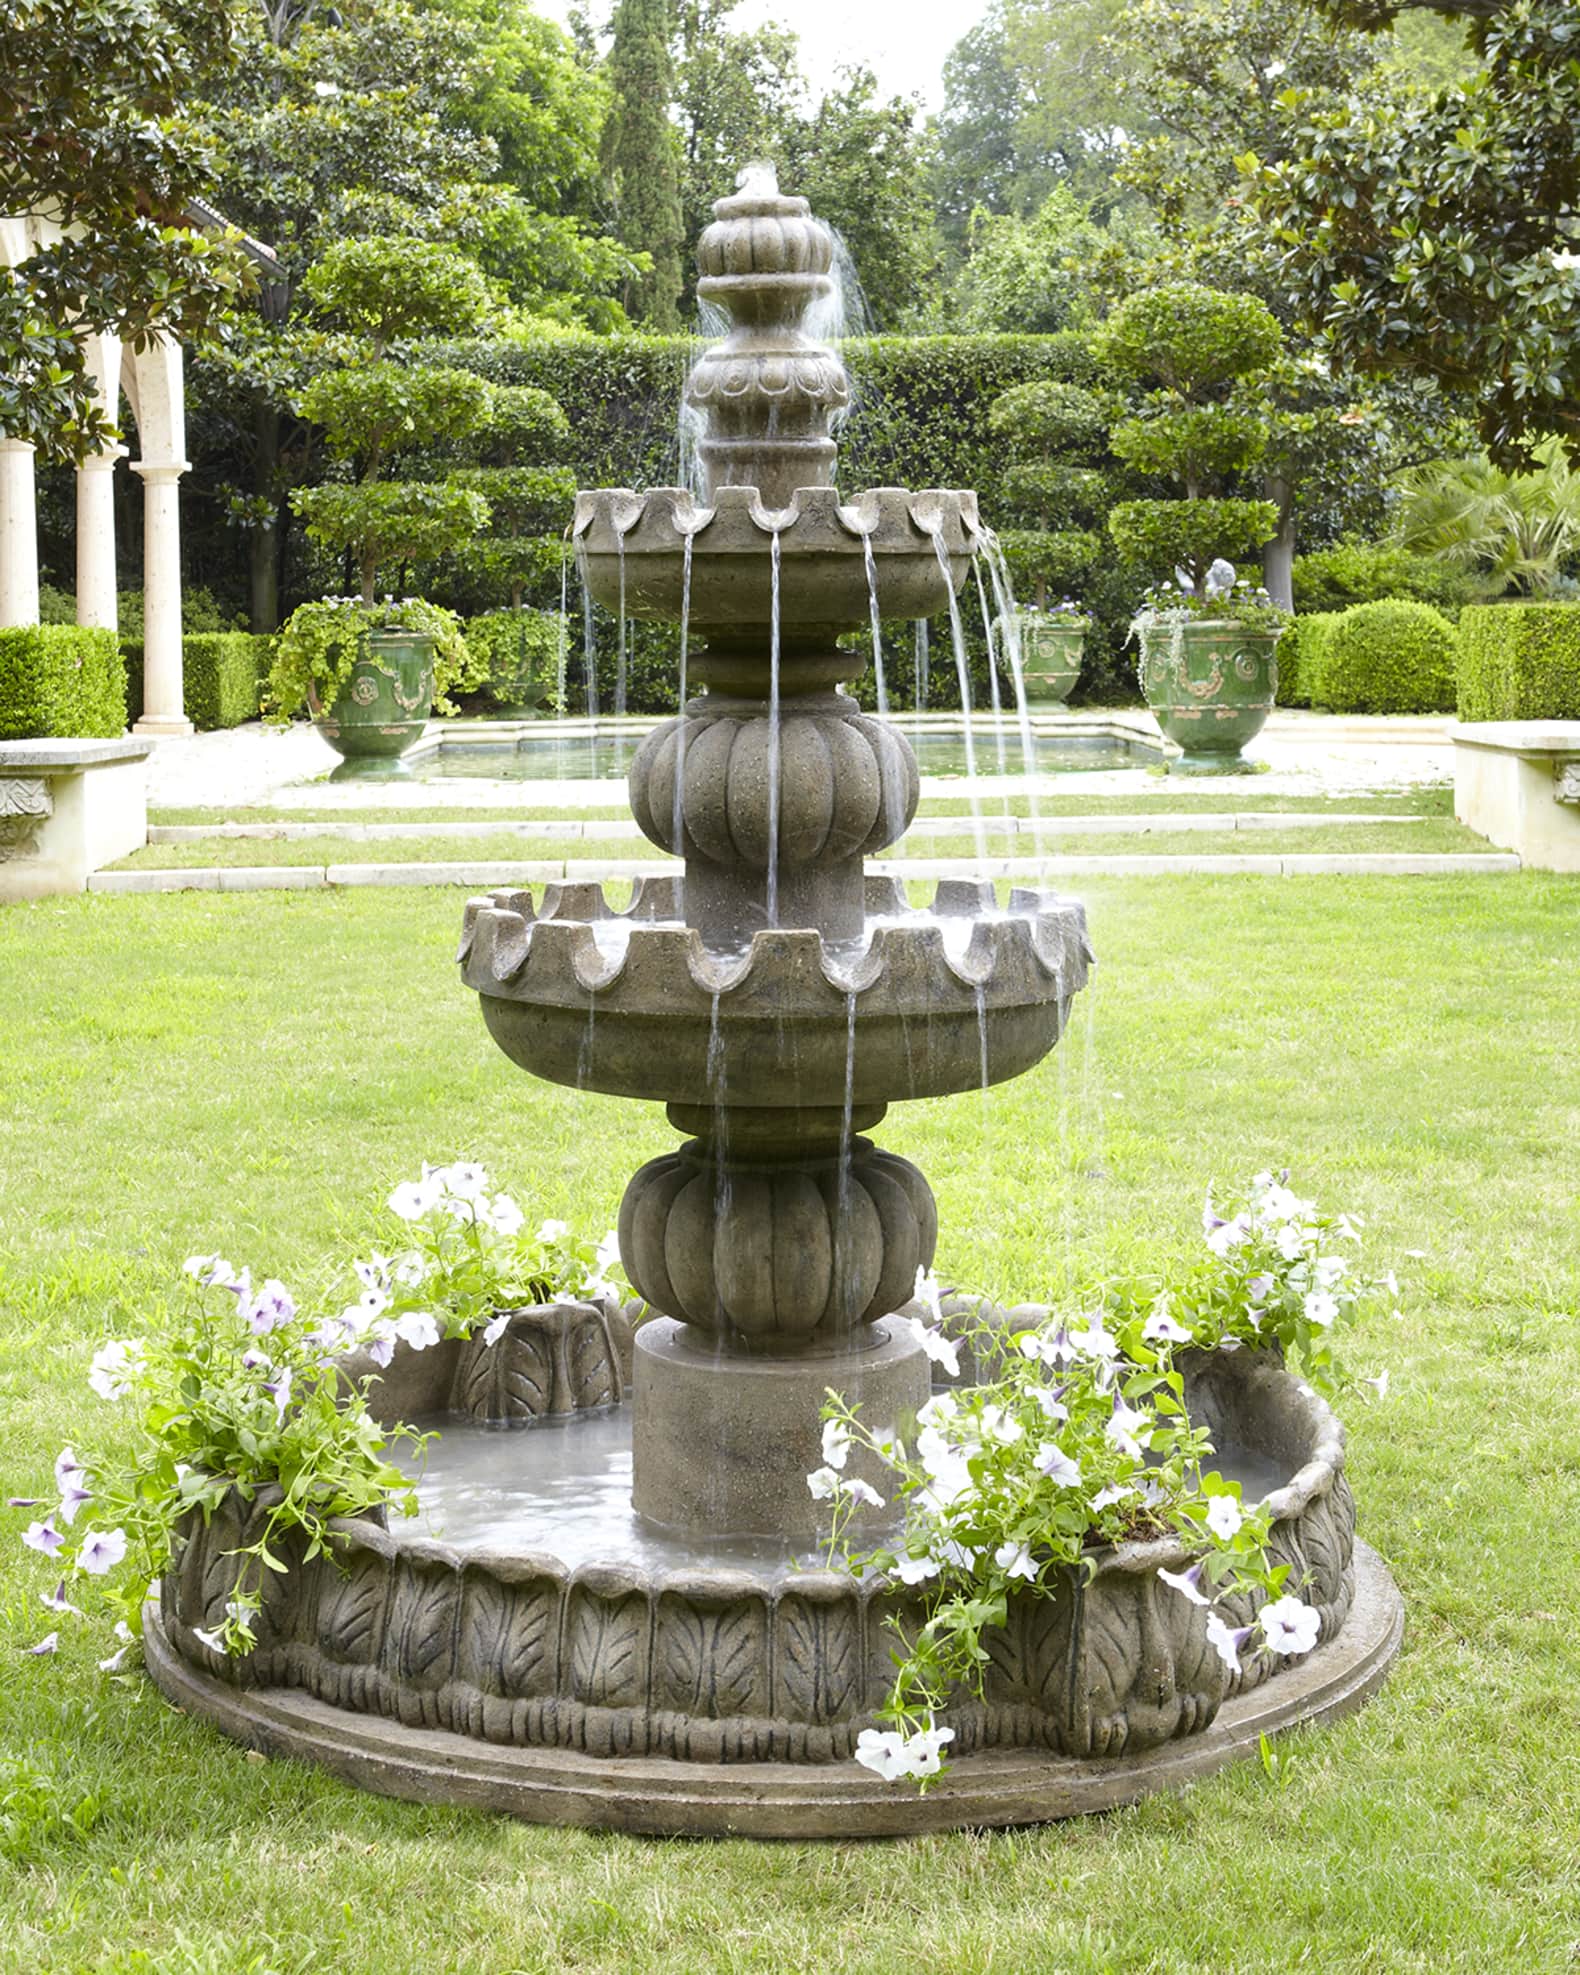 Three-Tier "Castle" Fountain